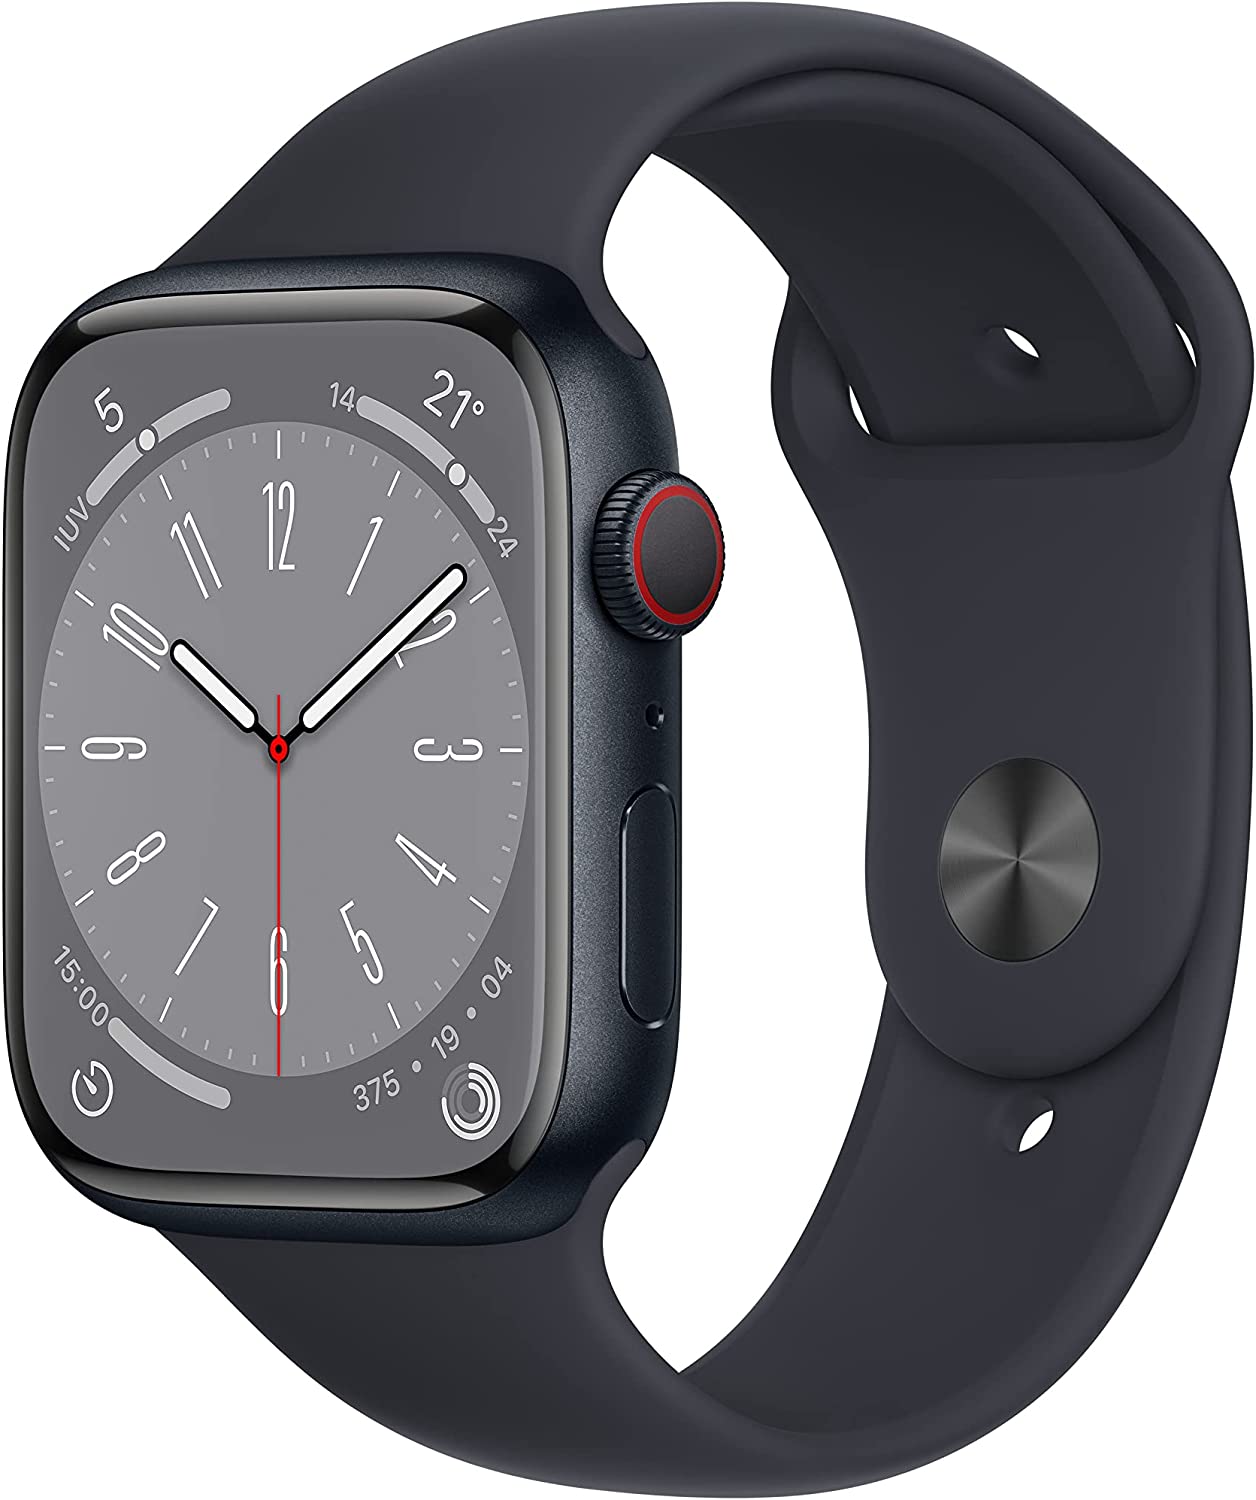 Apple Watch 8 vs Apple Watch 7